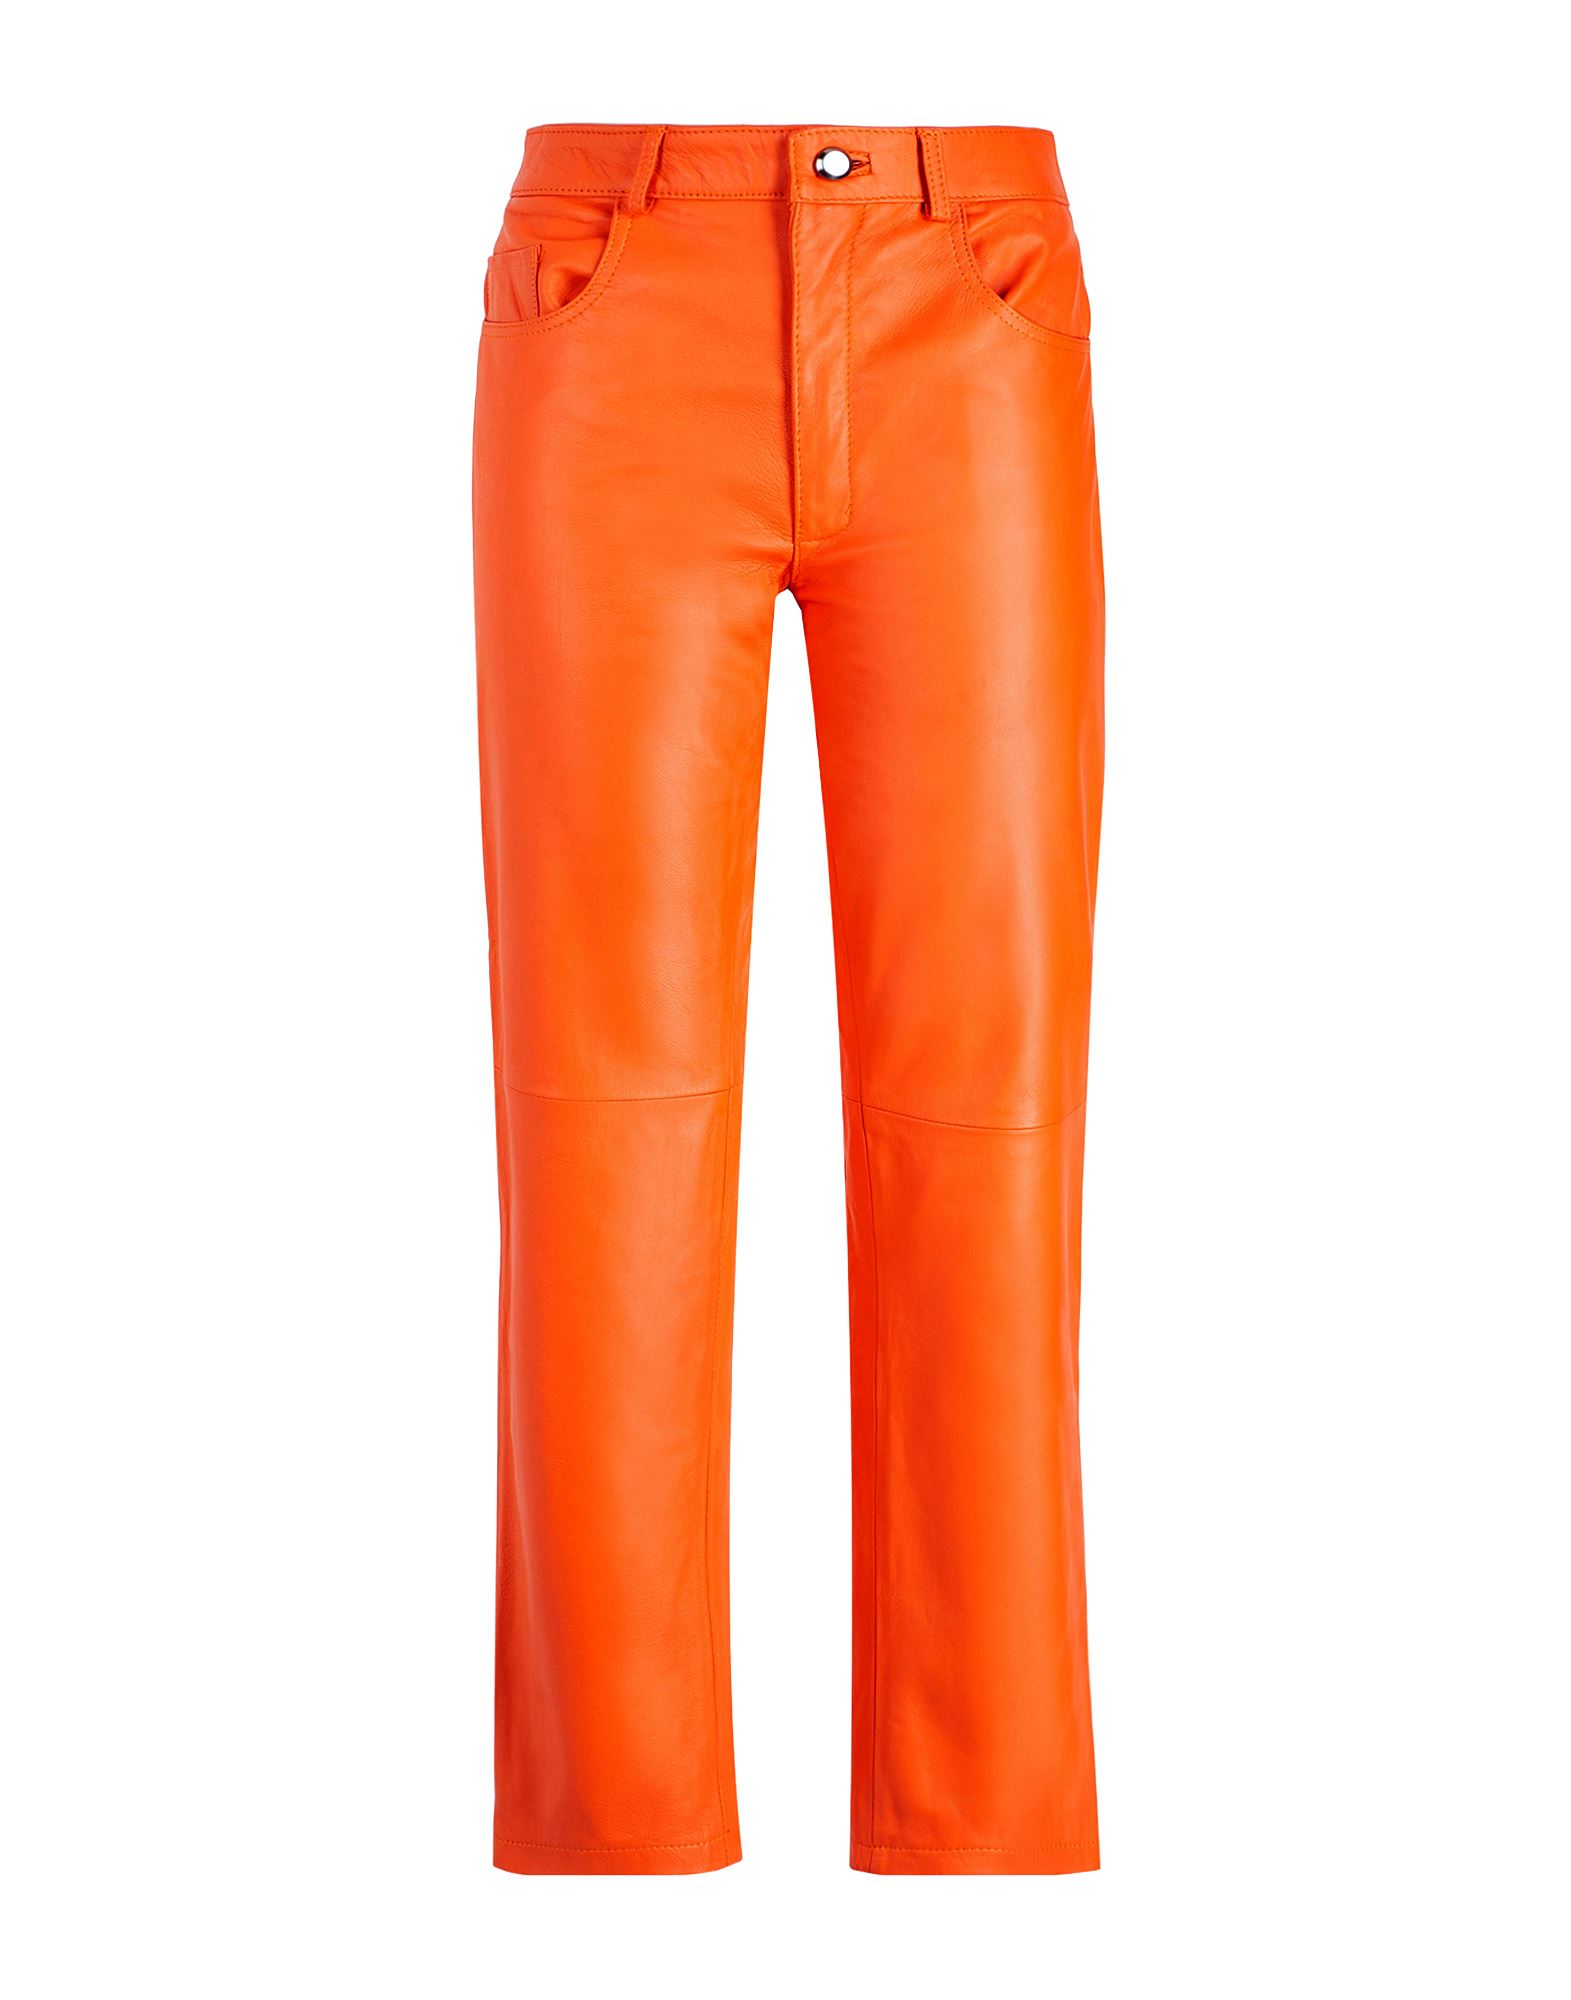 8 By Yoox Pants In Orange